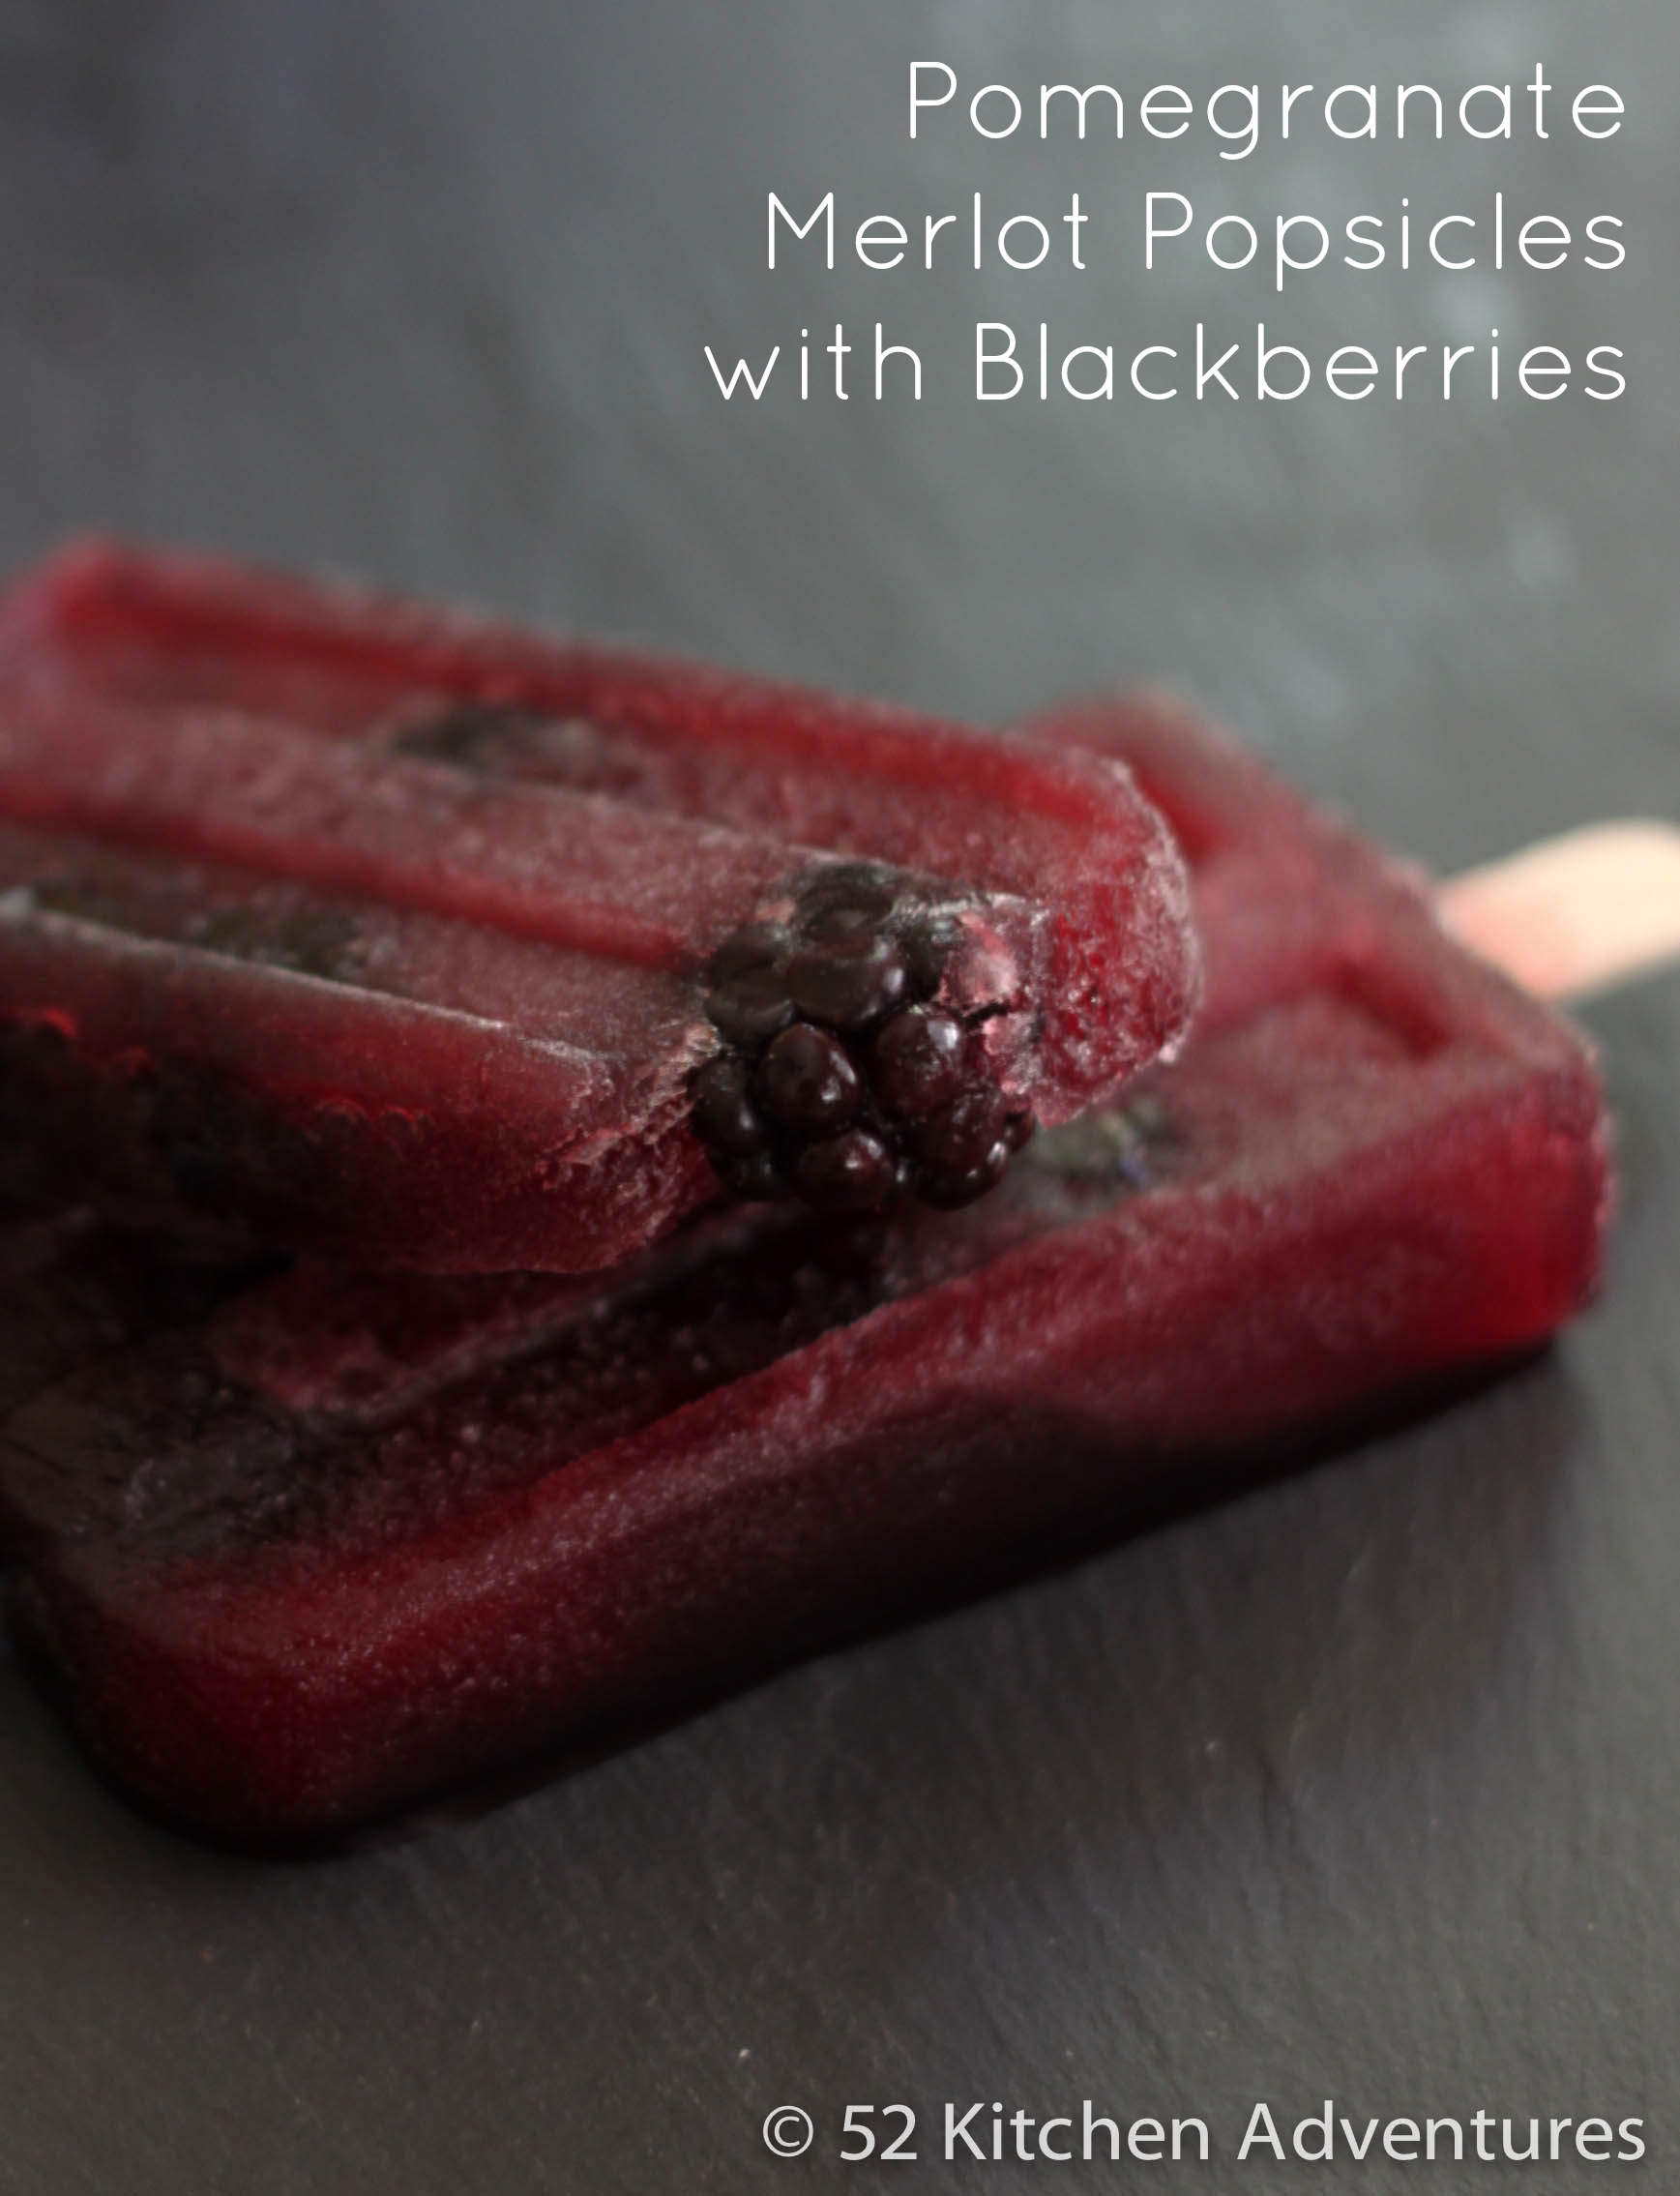 Pomegranate Merlot Popsicles with Blackberries